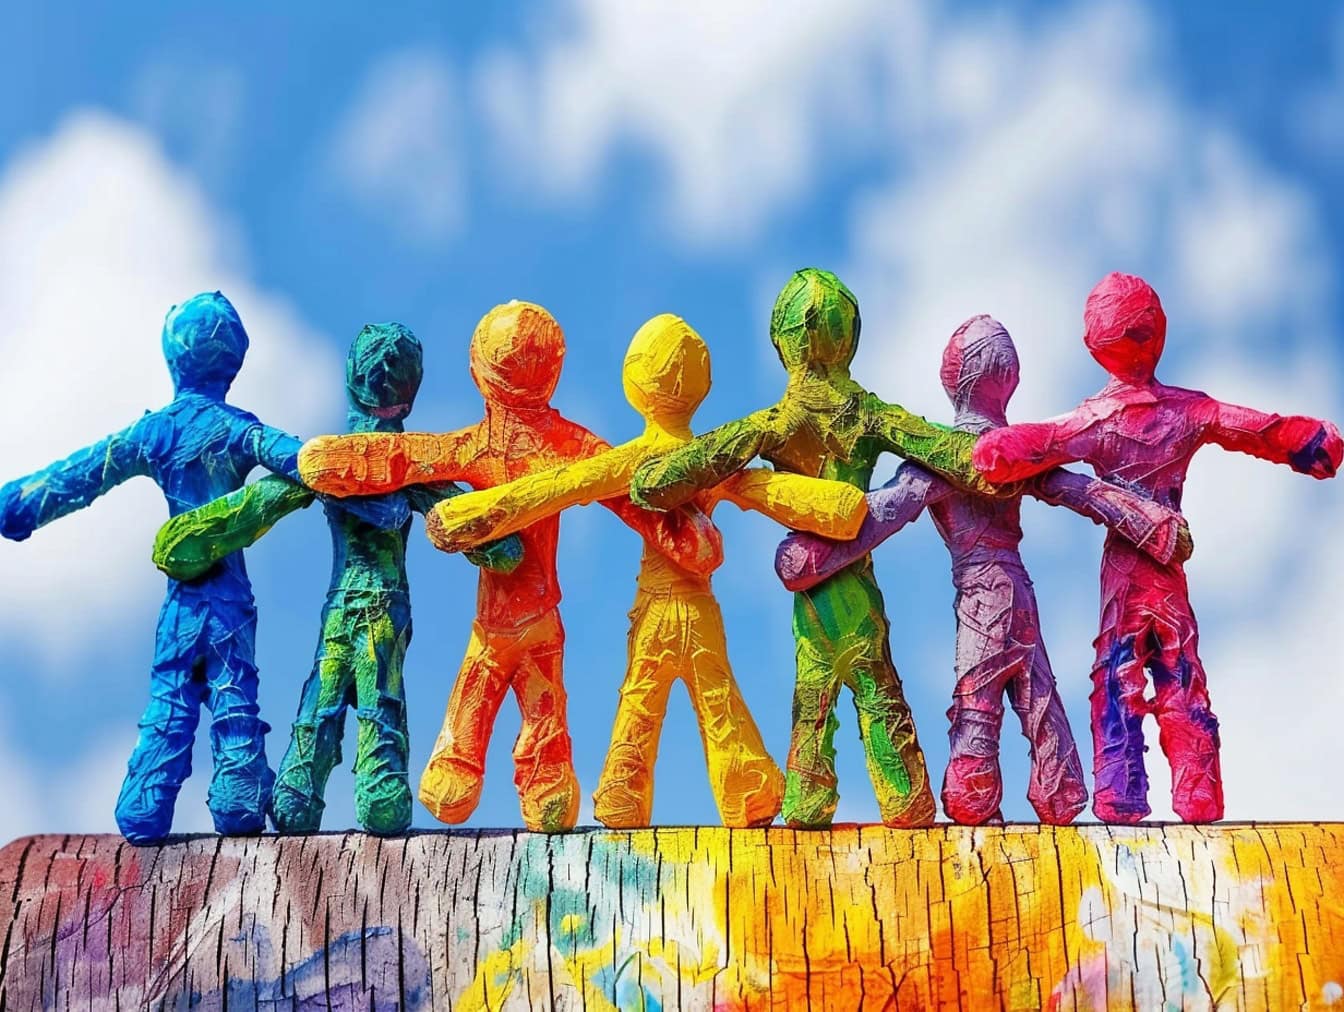 Des figurines en papier colorées se tenant la main, une illustration de l’unité, de la tolérance et de l’égalité entre différents groupes ethniques de personnes